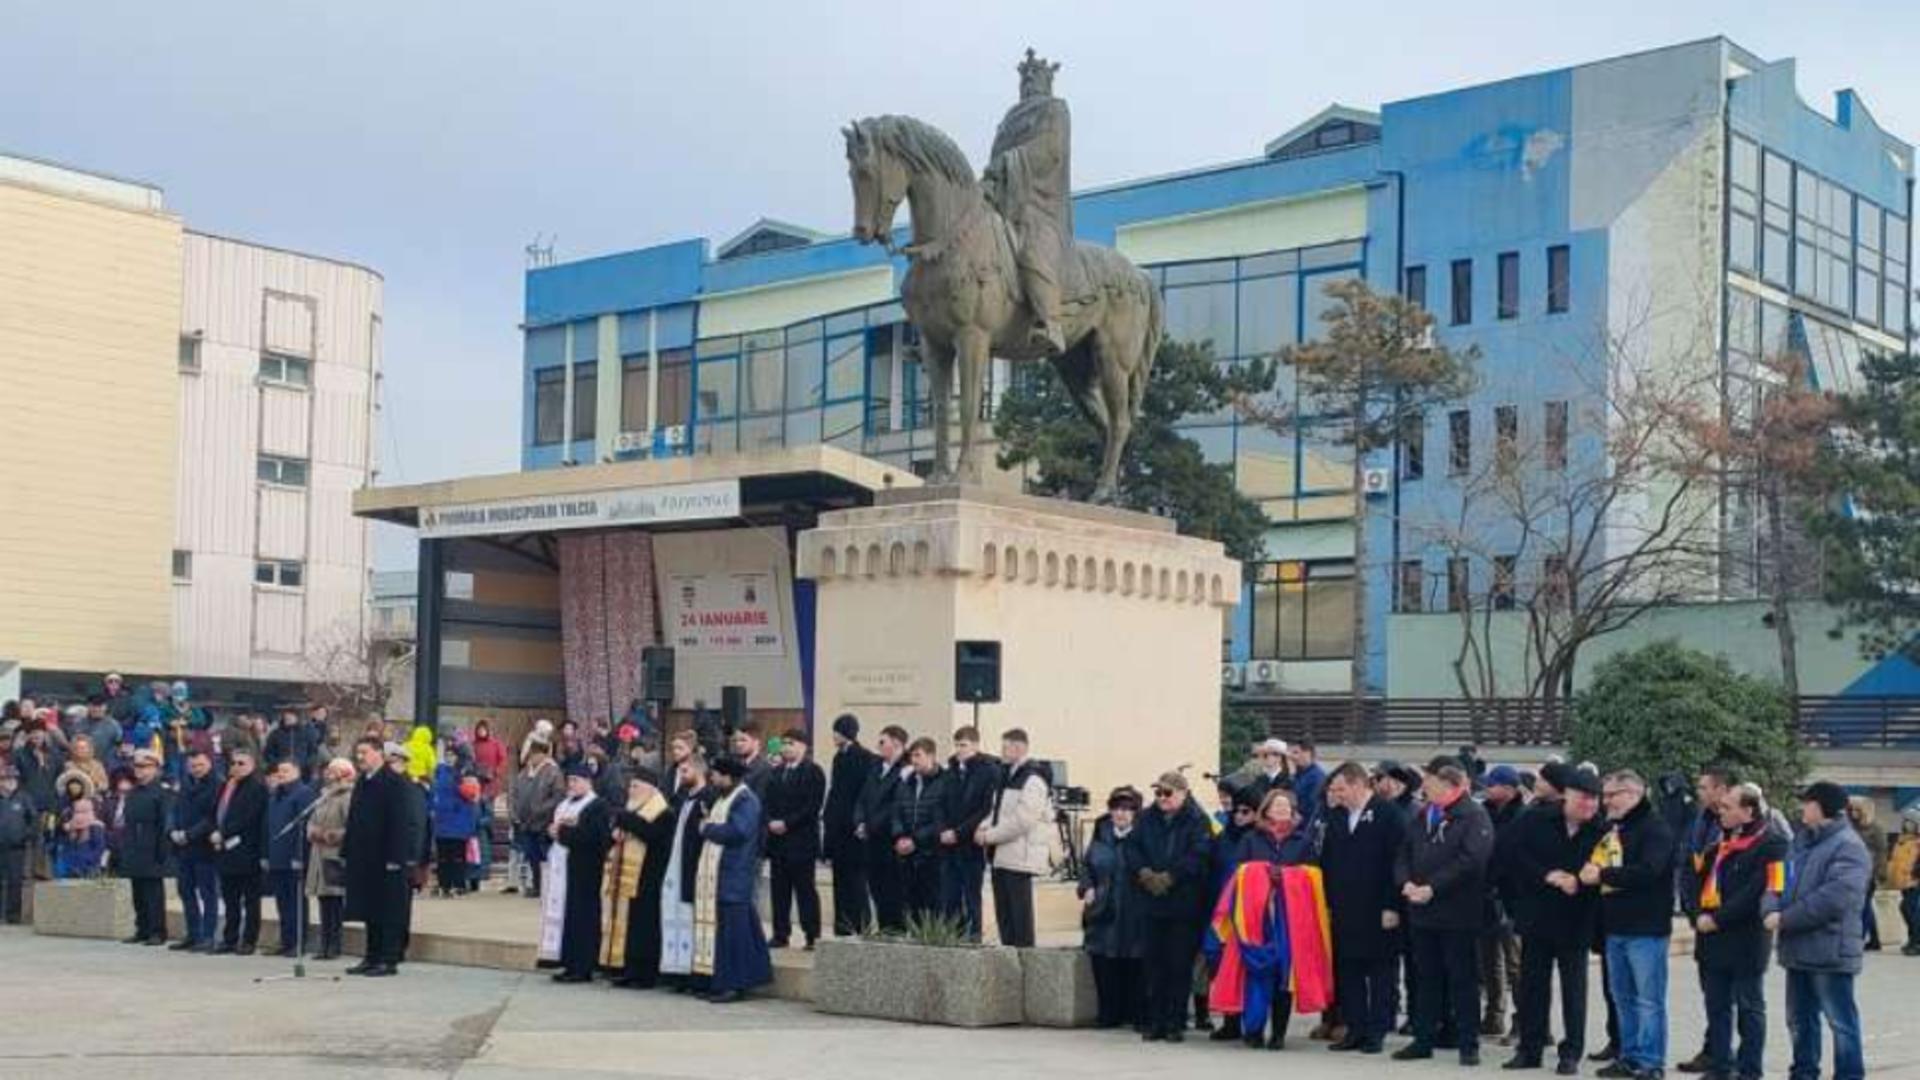 Huiduieli și controverse în timpul ceremoniei de Ziua Unirii Principatelor Române la Tulcea. Un bărbat este cercetat de jandarmi